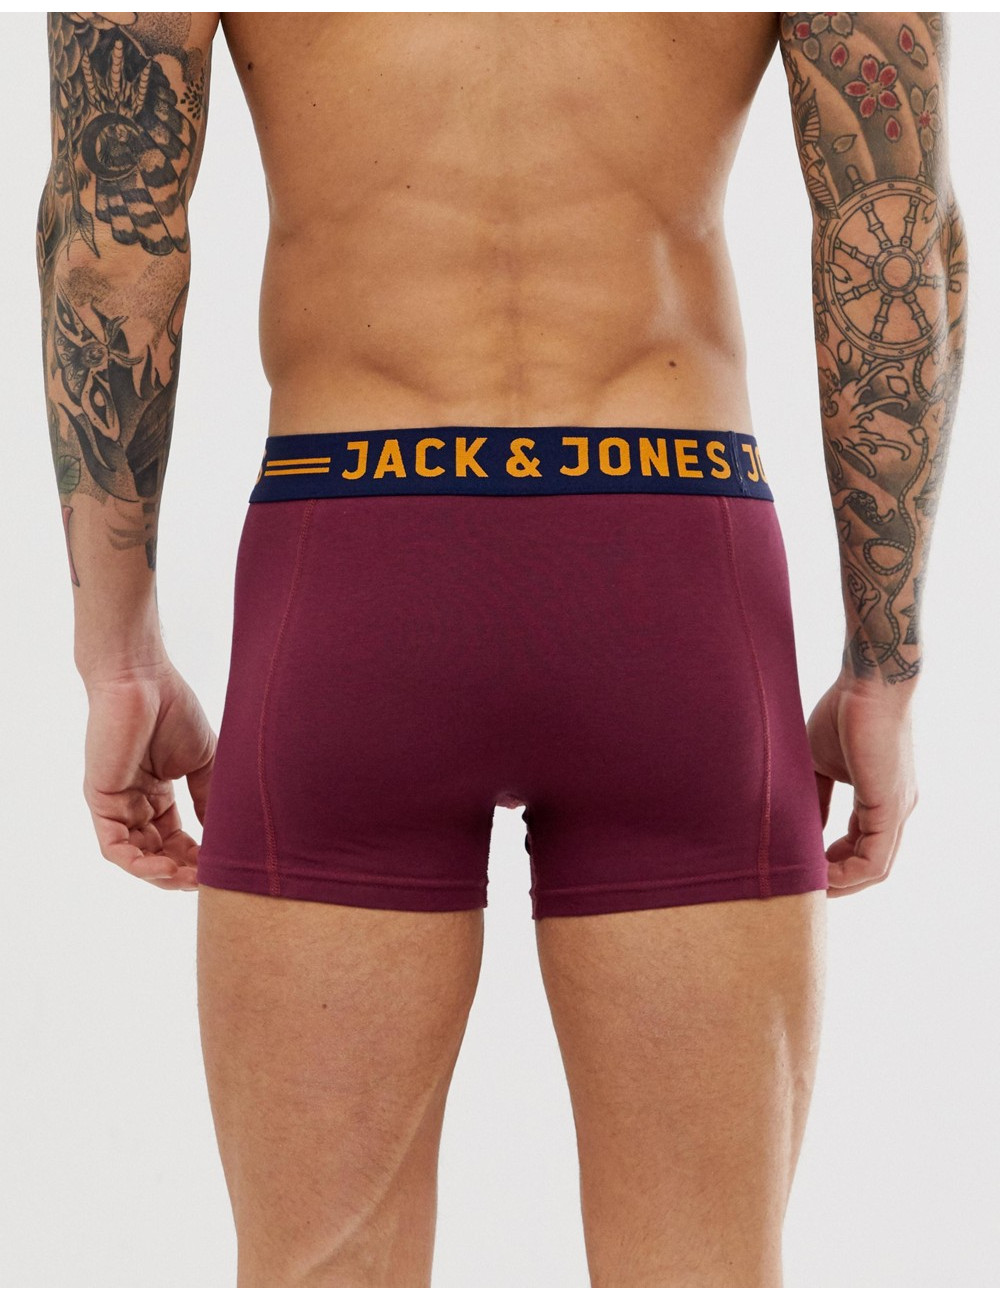 Jack & Jones trunks 3 pack...